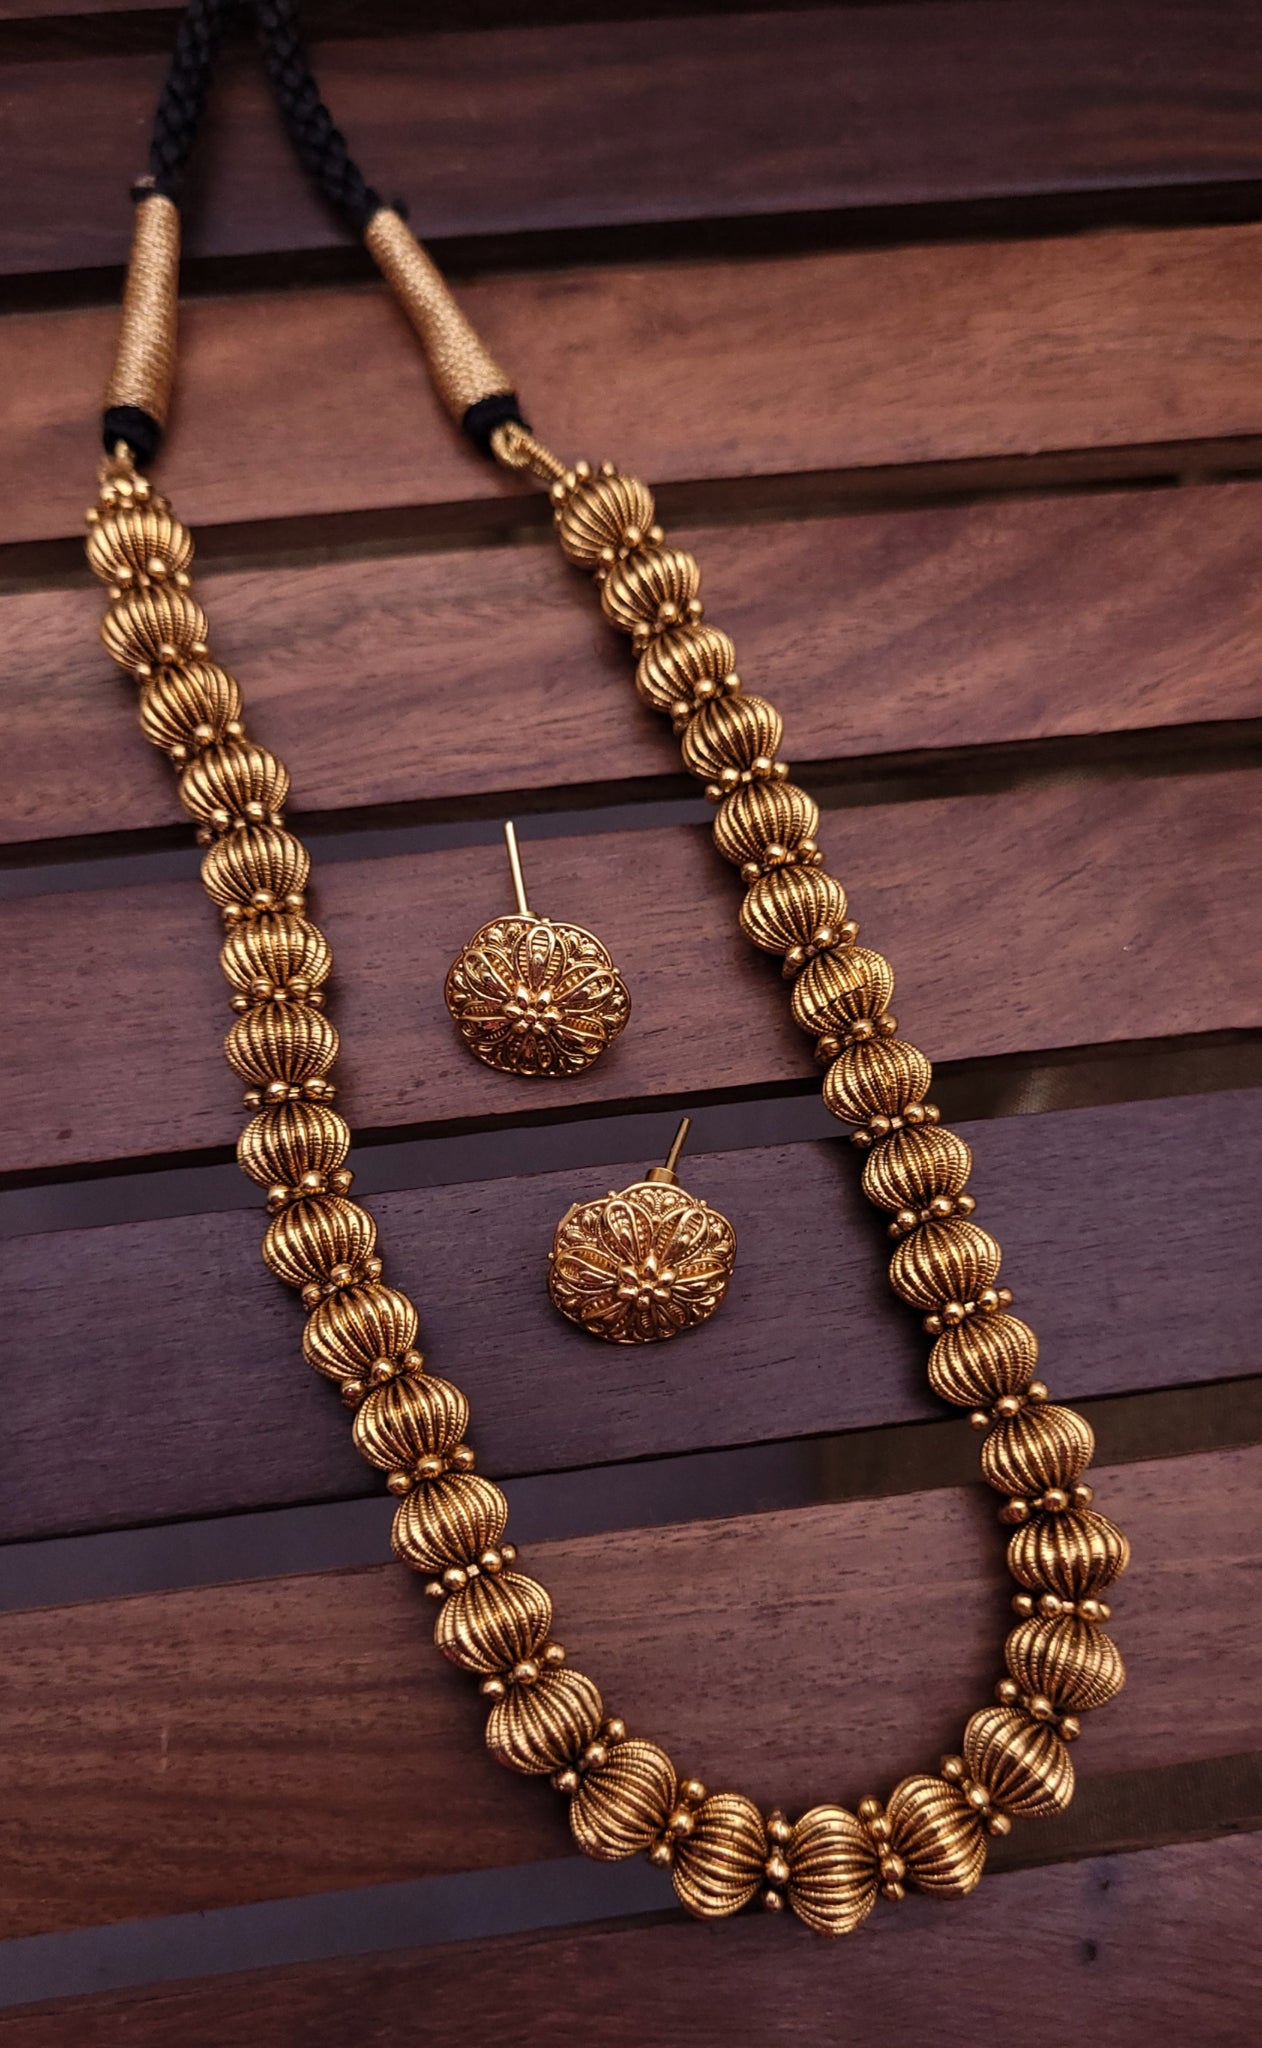 Golden Moti Mala with earrings